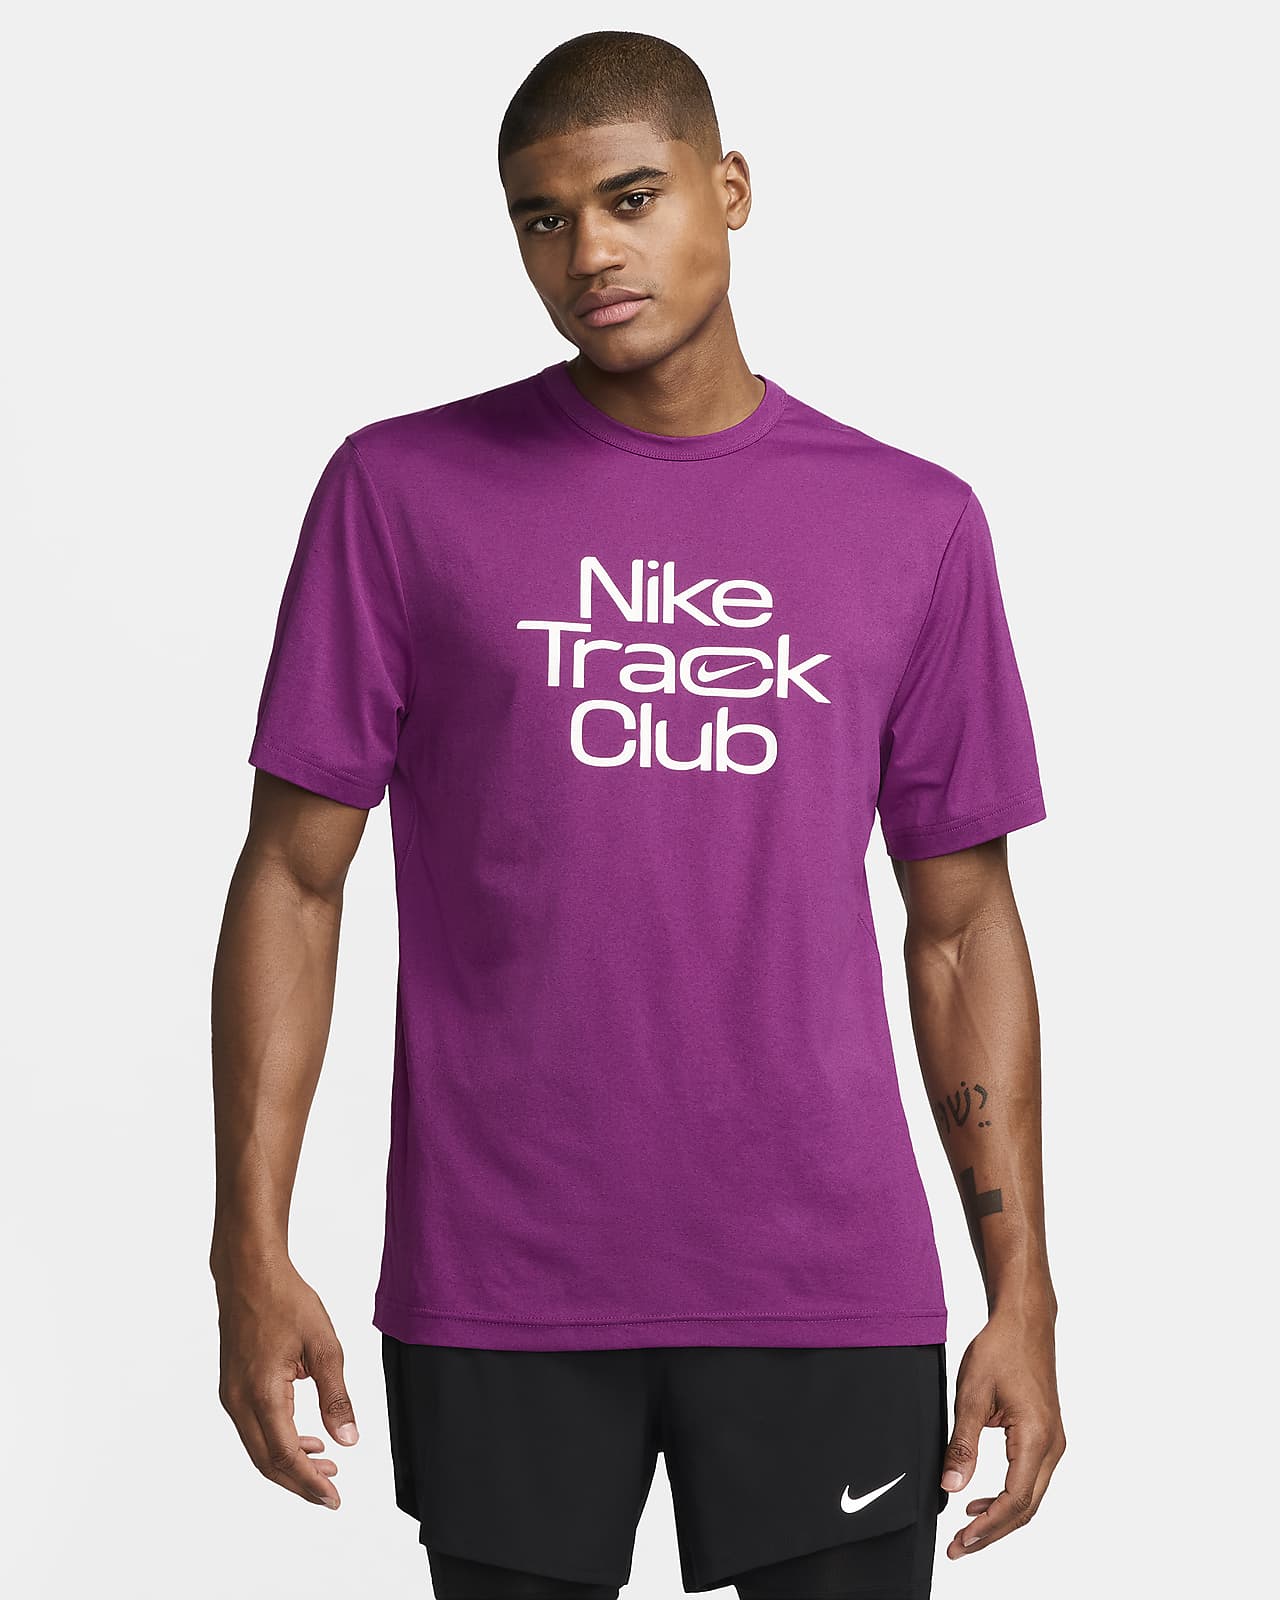 Męska koszulka z krótkim rękawem do biegania Dri-FIT Nike Track Club